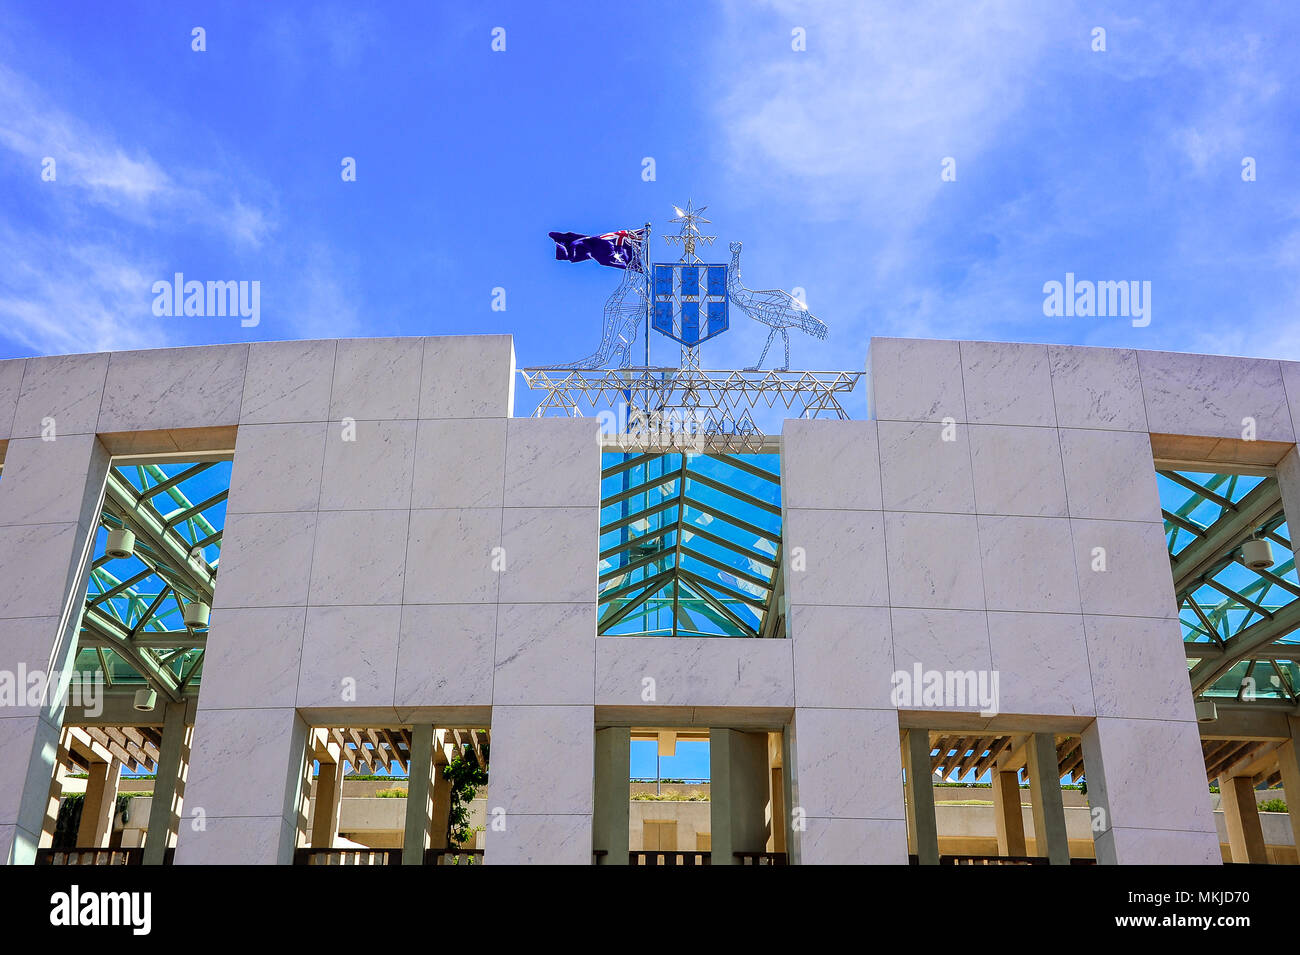 Entrée principale de la nouvelle Maison du Parlement, avec les armoiries de l'affichage le kangourou, l'émeu et du Commonwealth star contre un ciel bleu profond Banque D'Images